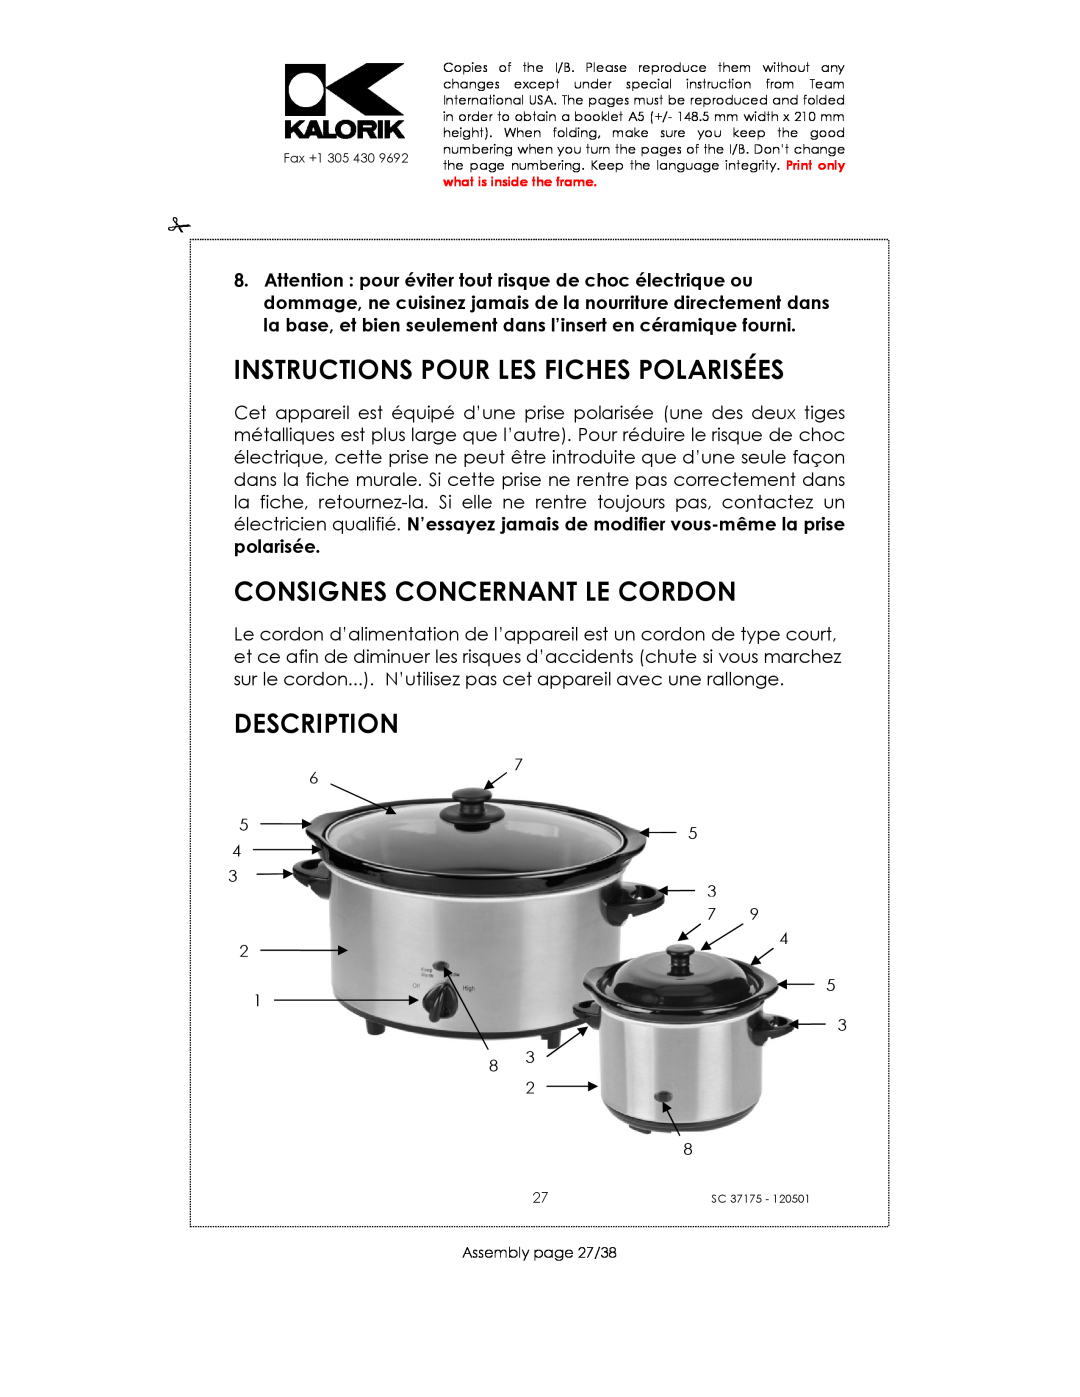 Kalorik SC 37175 Instructions Pour Les Fiches Polarisées, Consignes Concernant Le Cordon, Description, Assembly page 27/38 